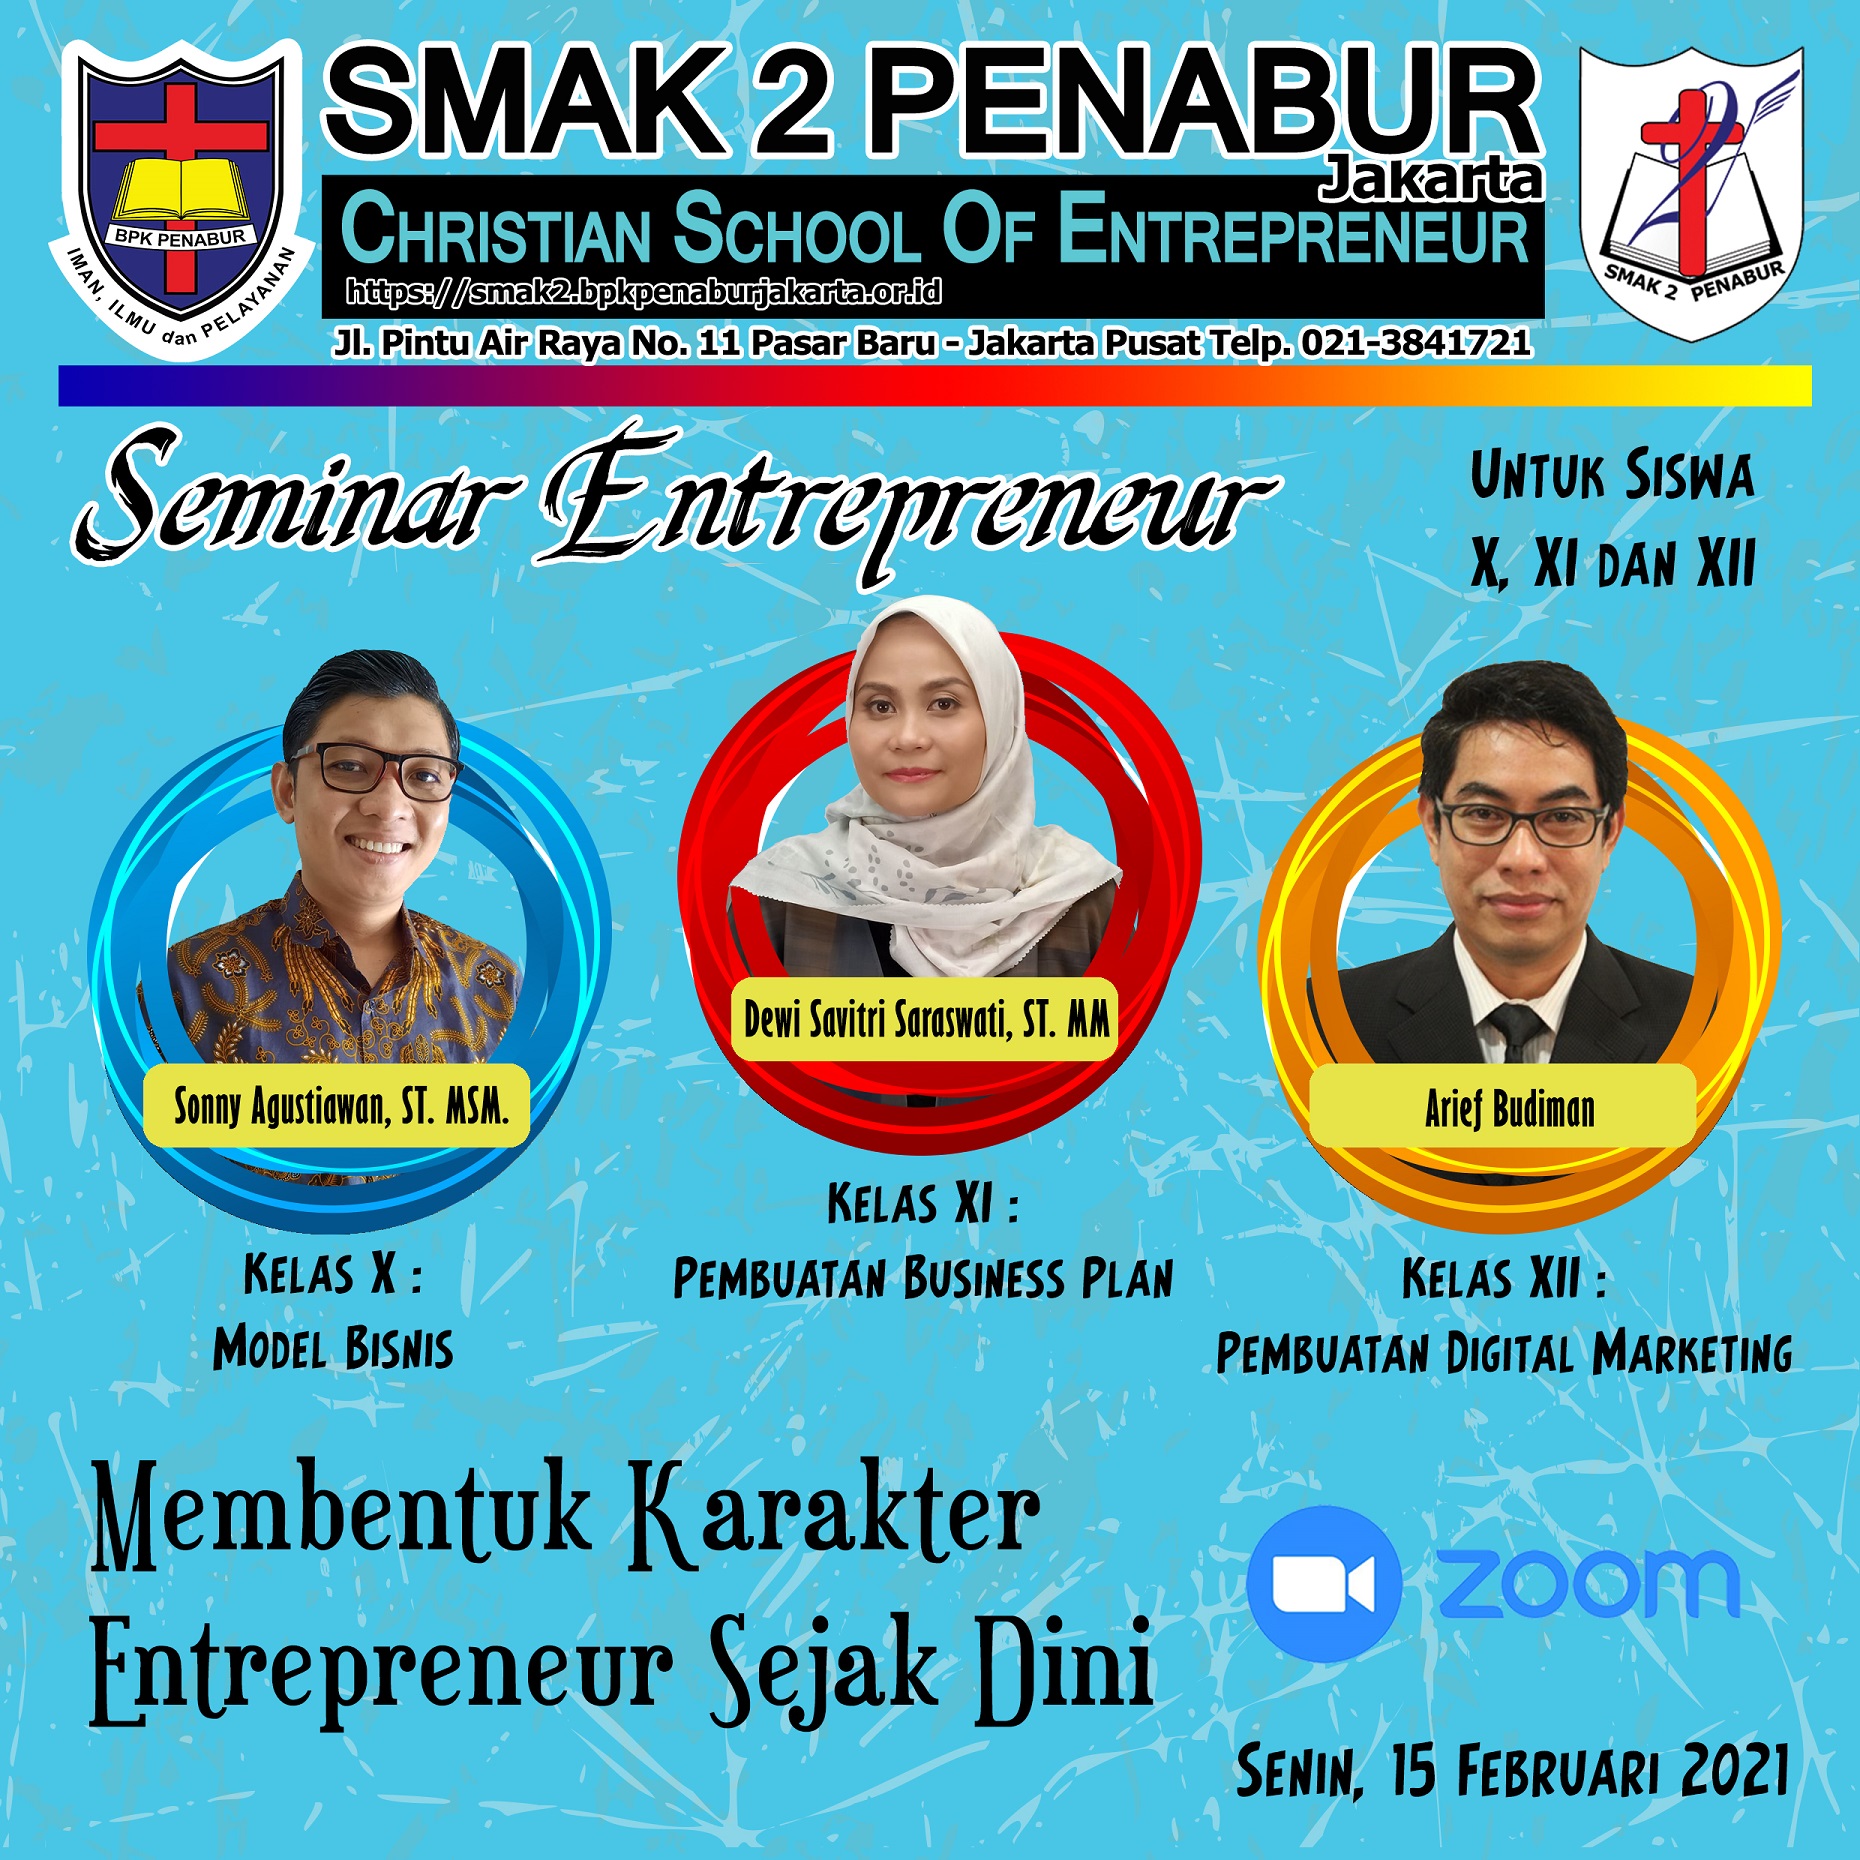 Seminar Entrepreneur "Membentuk Karakter Entrepreneur Sejak Dini"